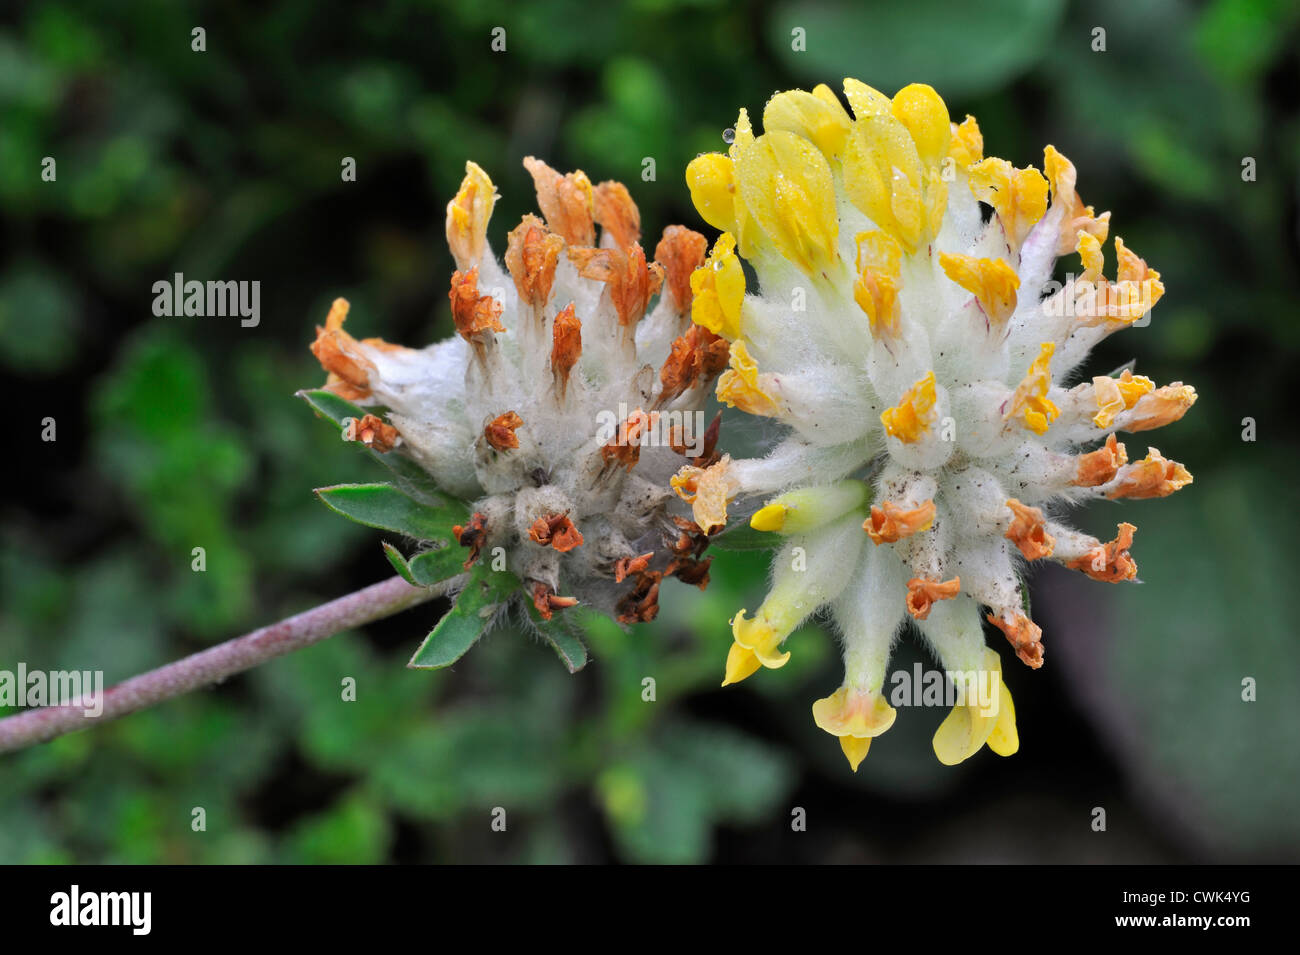 Common kidneyvetch / Kidney vetch / Woundwort (Anthyllis vulneraria) in flower Stock Photo